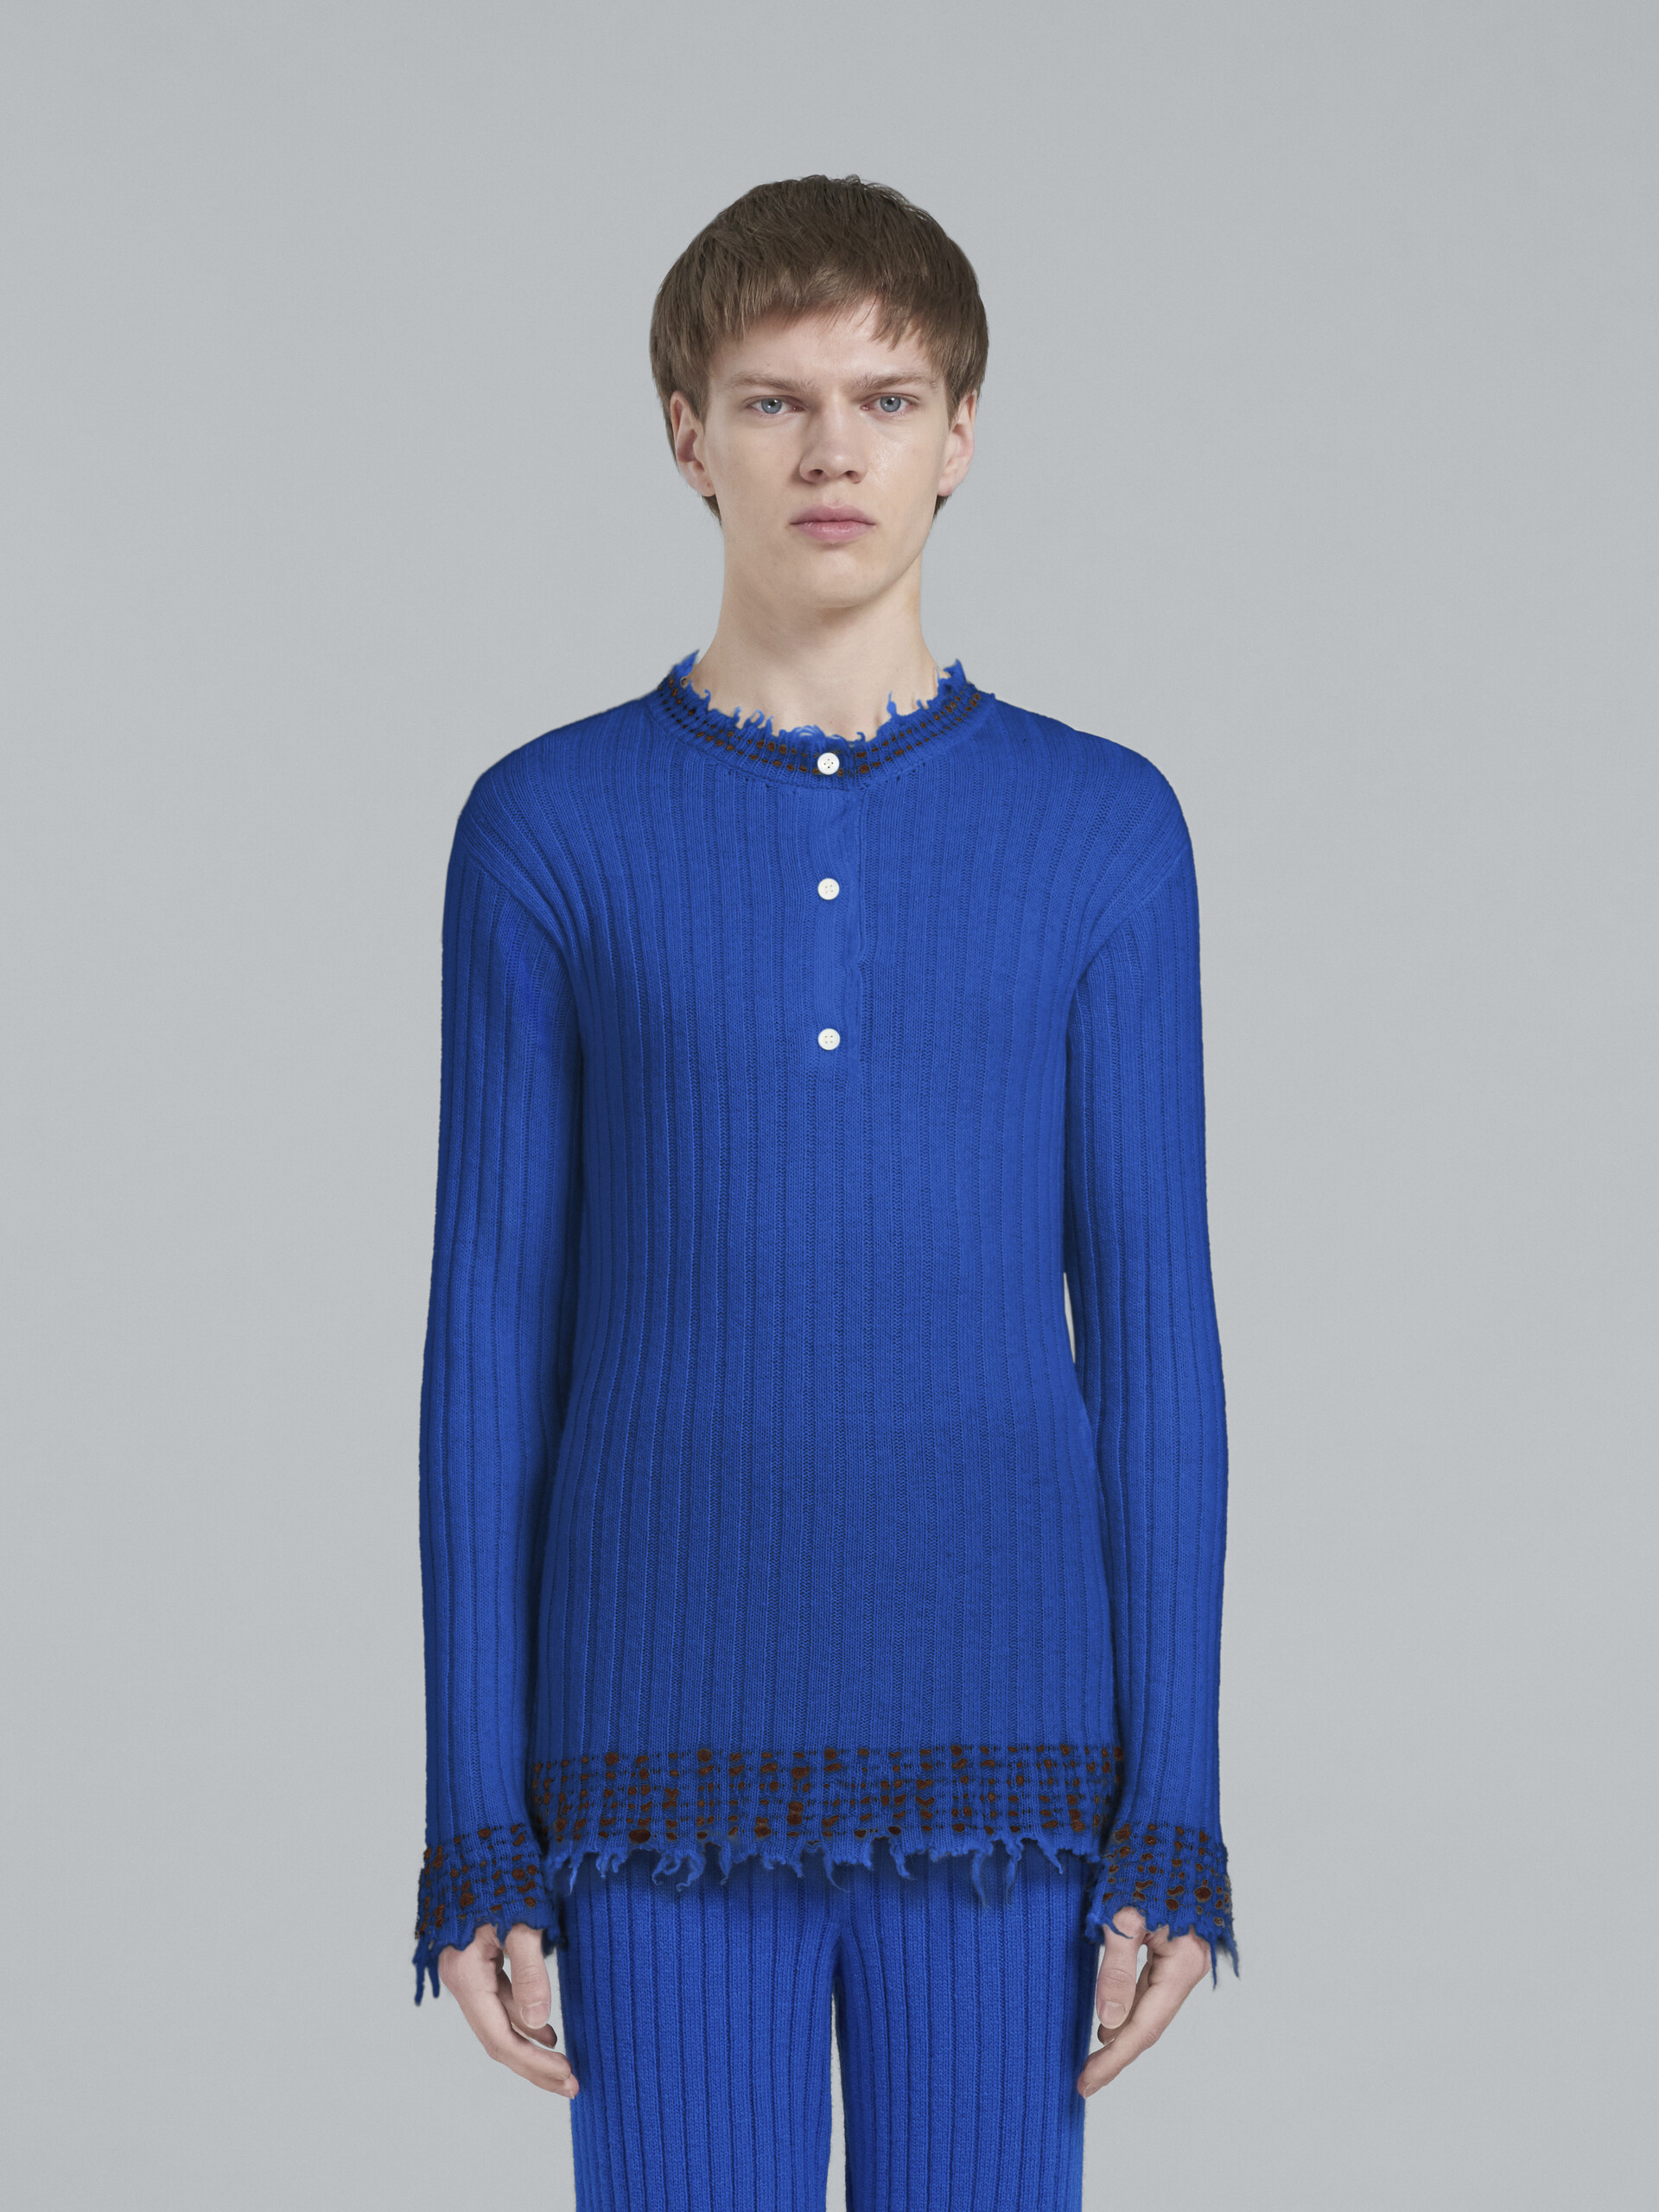 Blauer Strickpullover aus Wolle - Pullover - Image 2